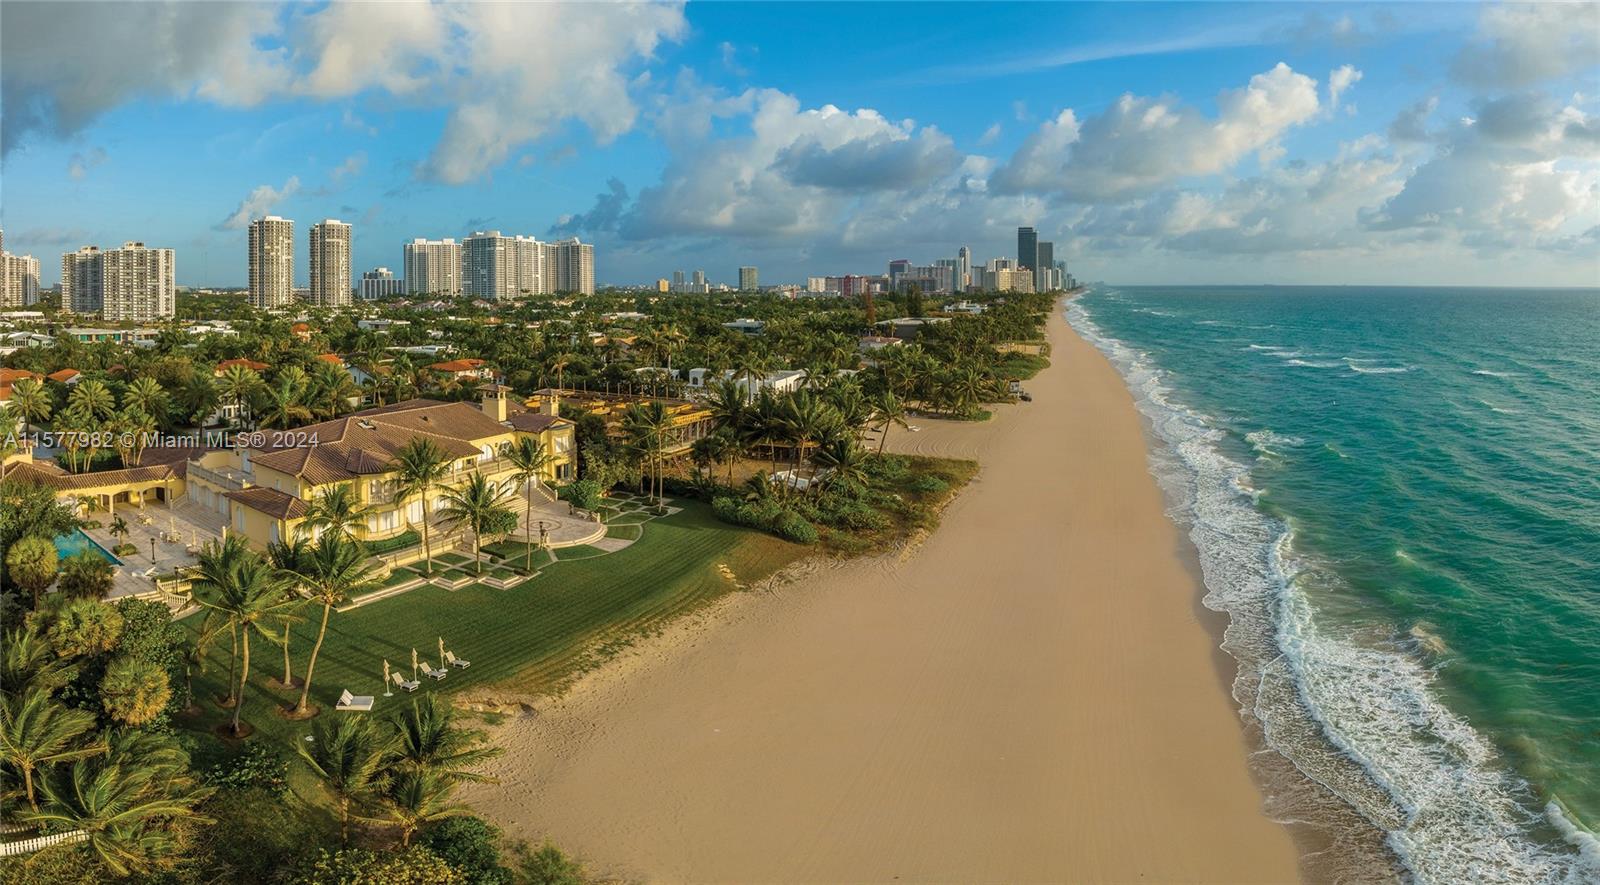 Property for Sale at 355 Ocean Blvd, Golden Beach, Miami-Dade County, Florida - Bedrooms: 9 
Bathrooms: 14  - $85,000,000